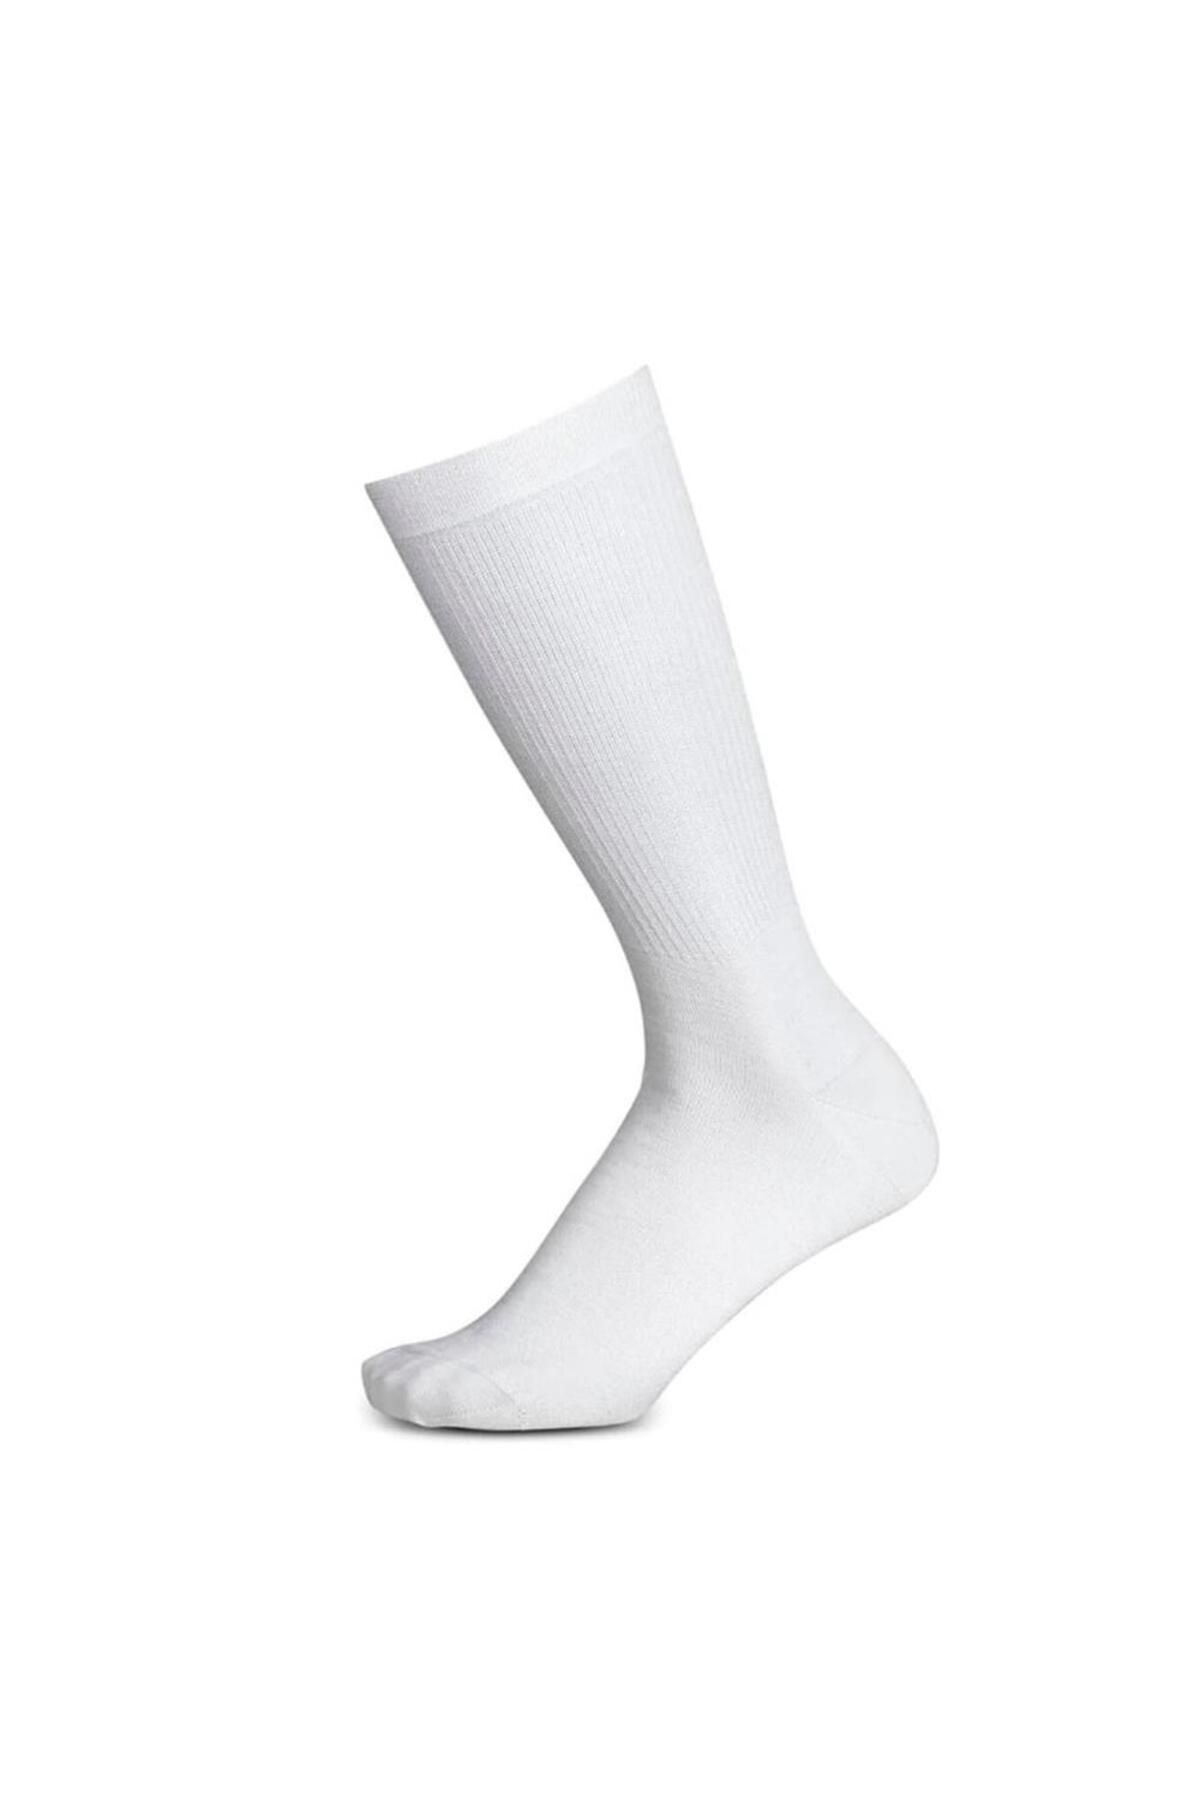 Sparco Rw-4 Çorap Fia Onaylı Beyaz 38/39 Numara